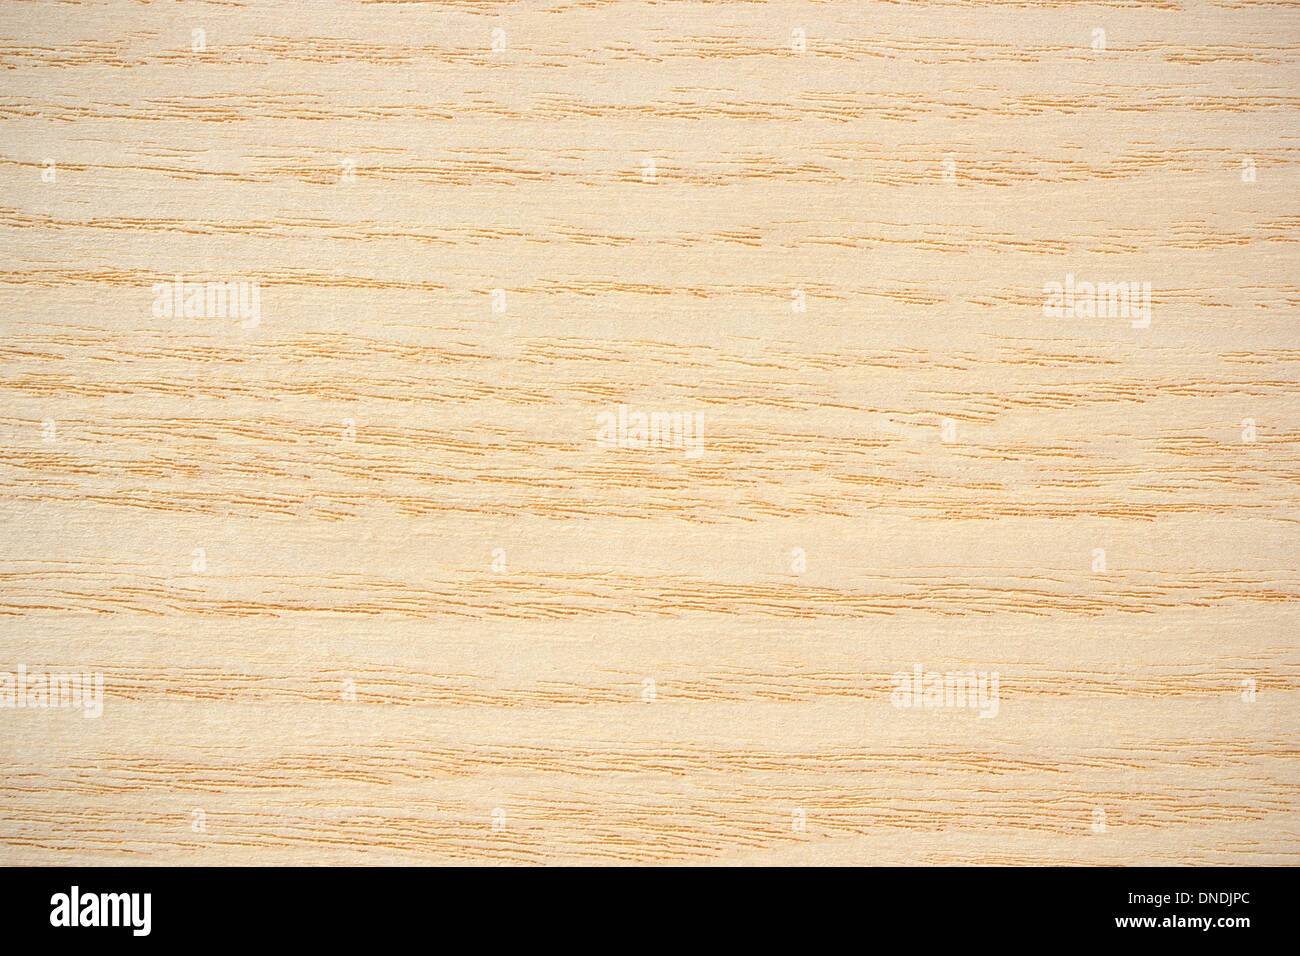 La surface de bois, le frêne (Fraxinus) - lignes horizontales Banque D'Images